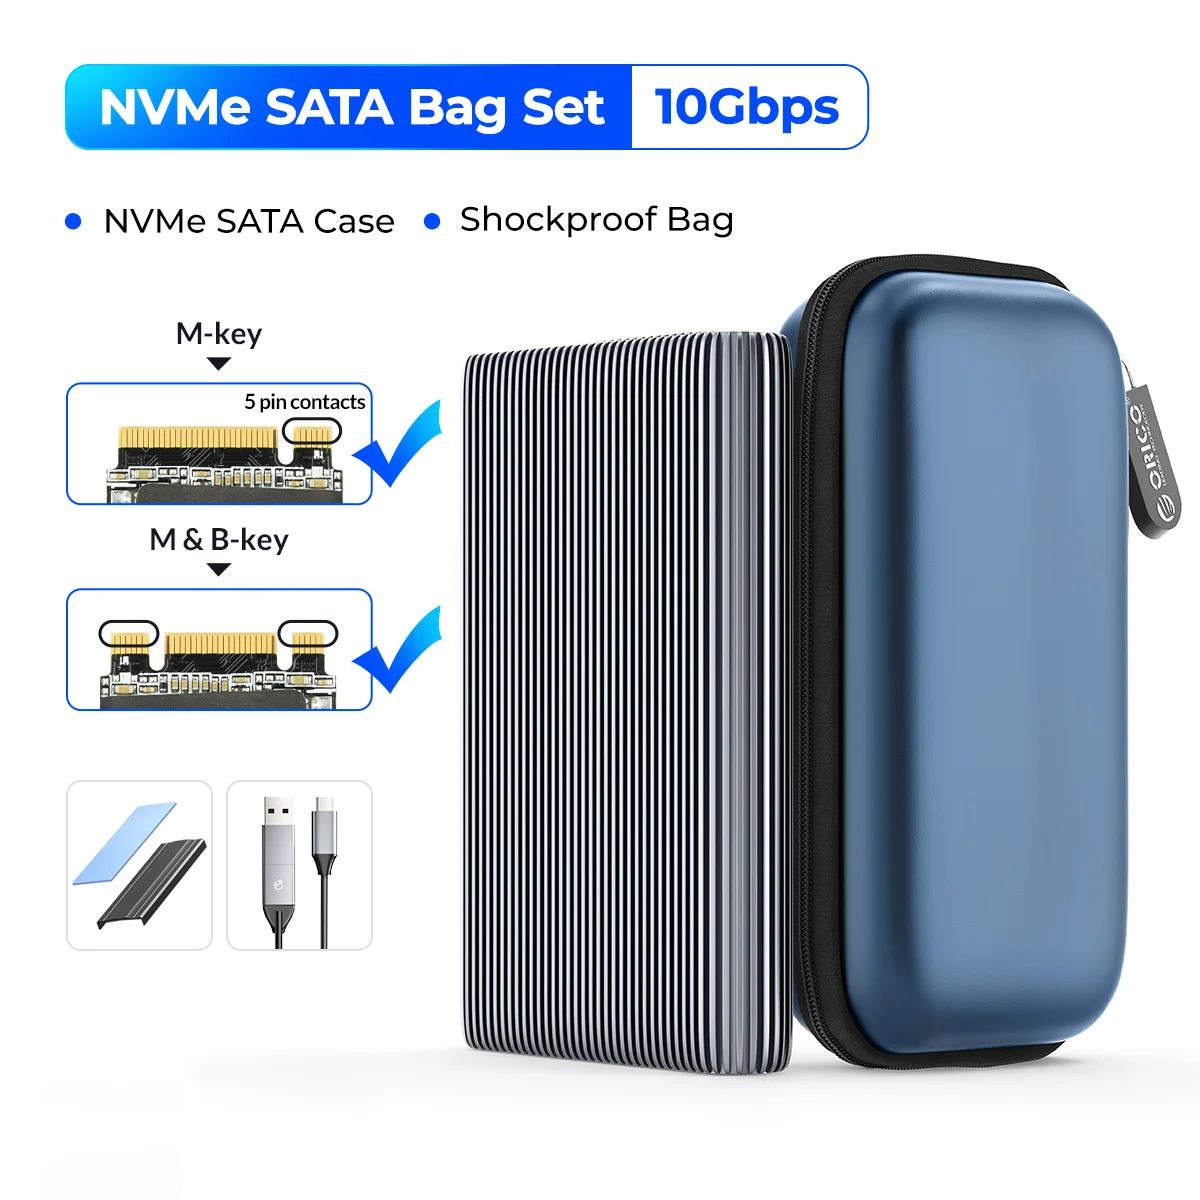 Color:NVMe SATA Bag Set